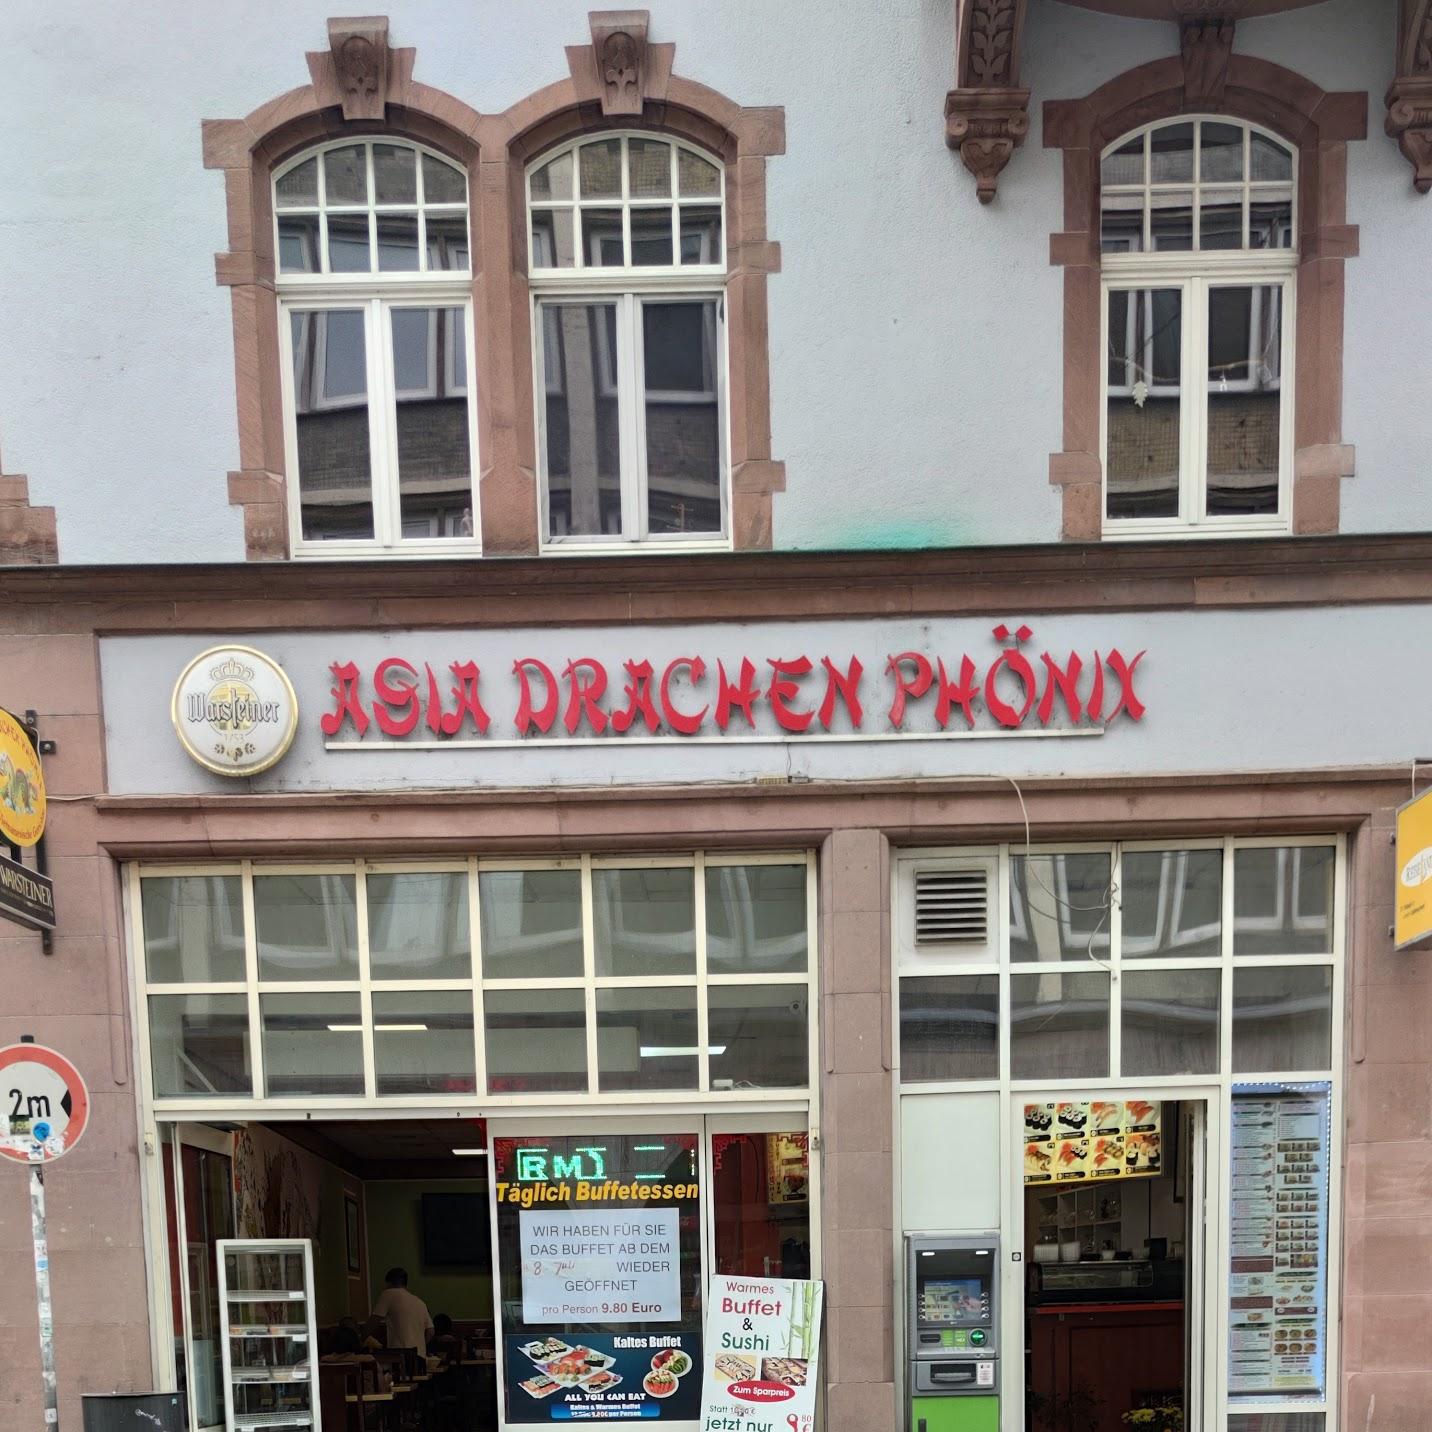 Restaurant "Asia Drache Phönix" in Erfurt